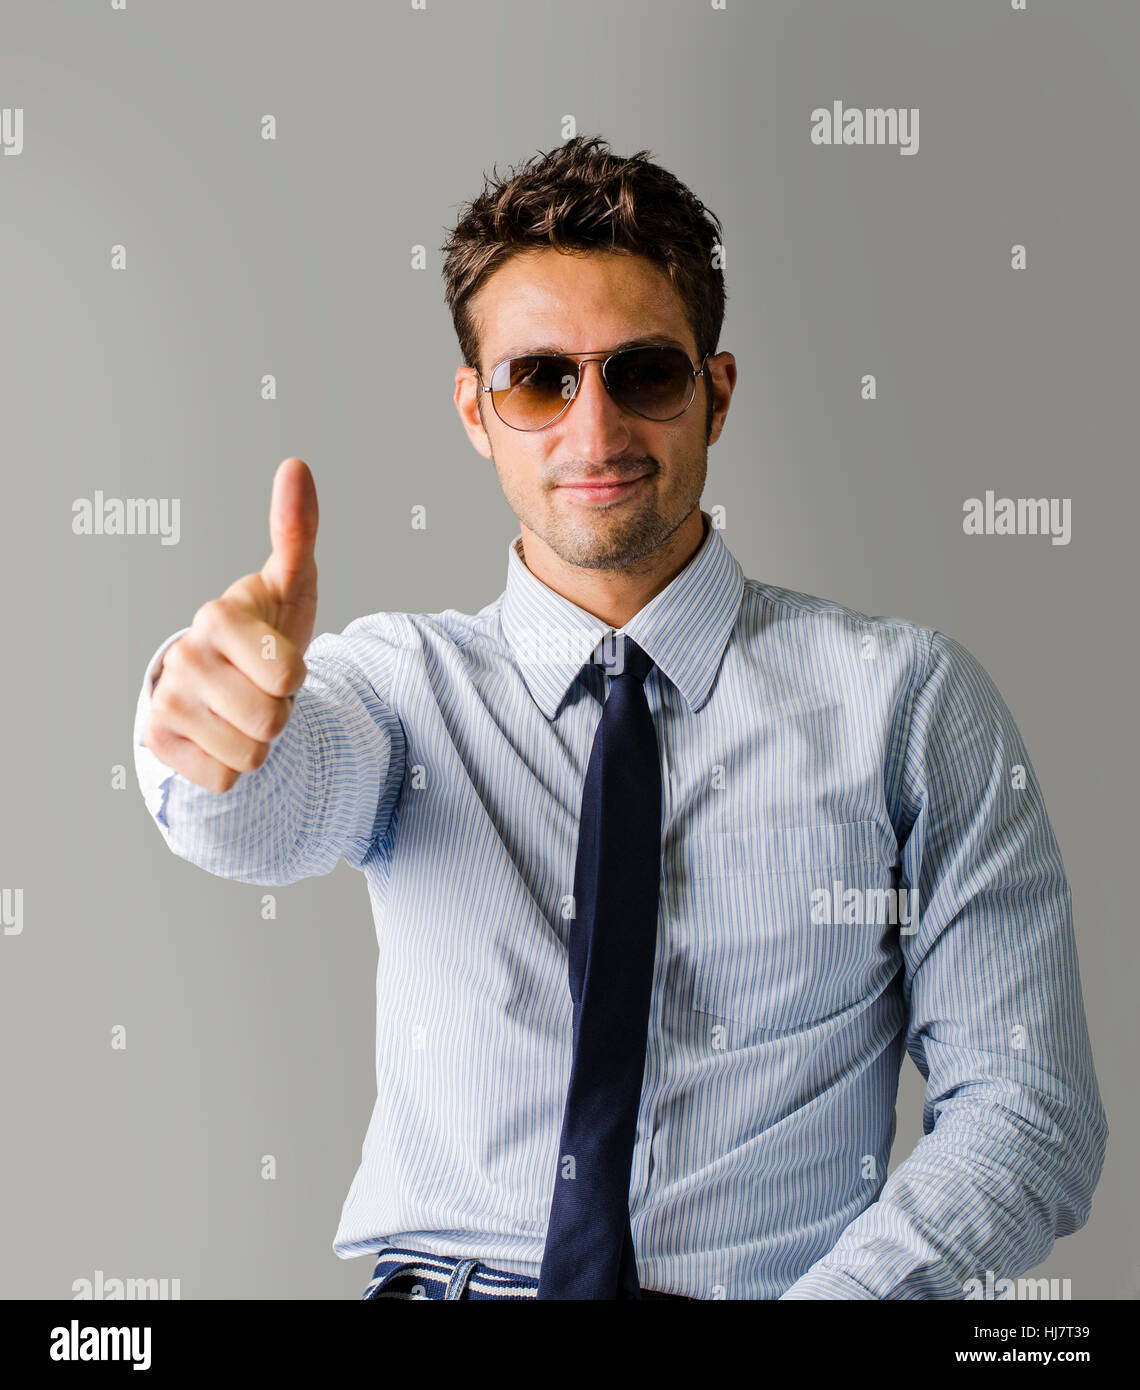 Alternativa joven negocio hombre vestido con camisa, corbata y rajados Fotografía de stock